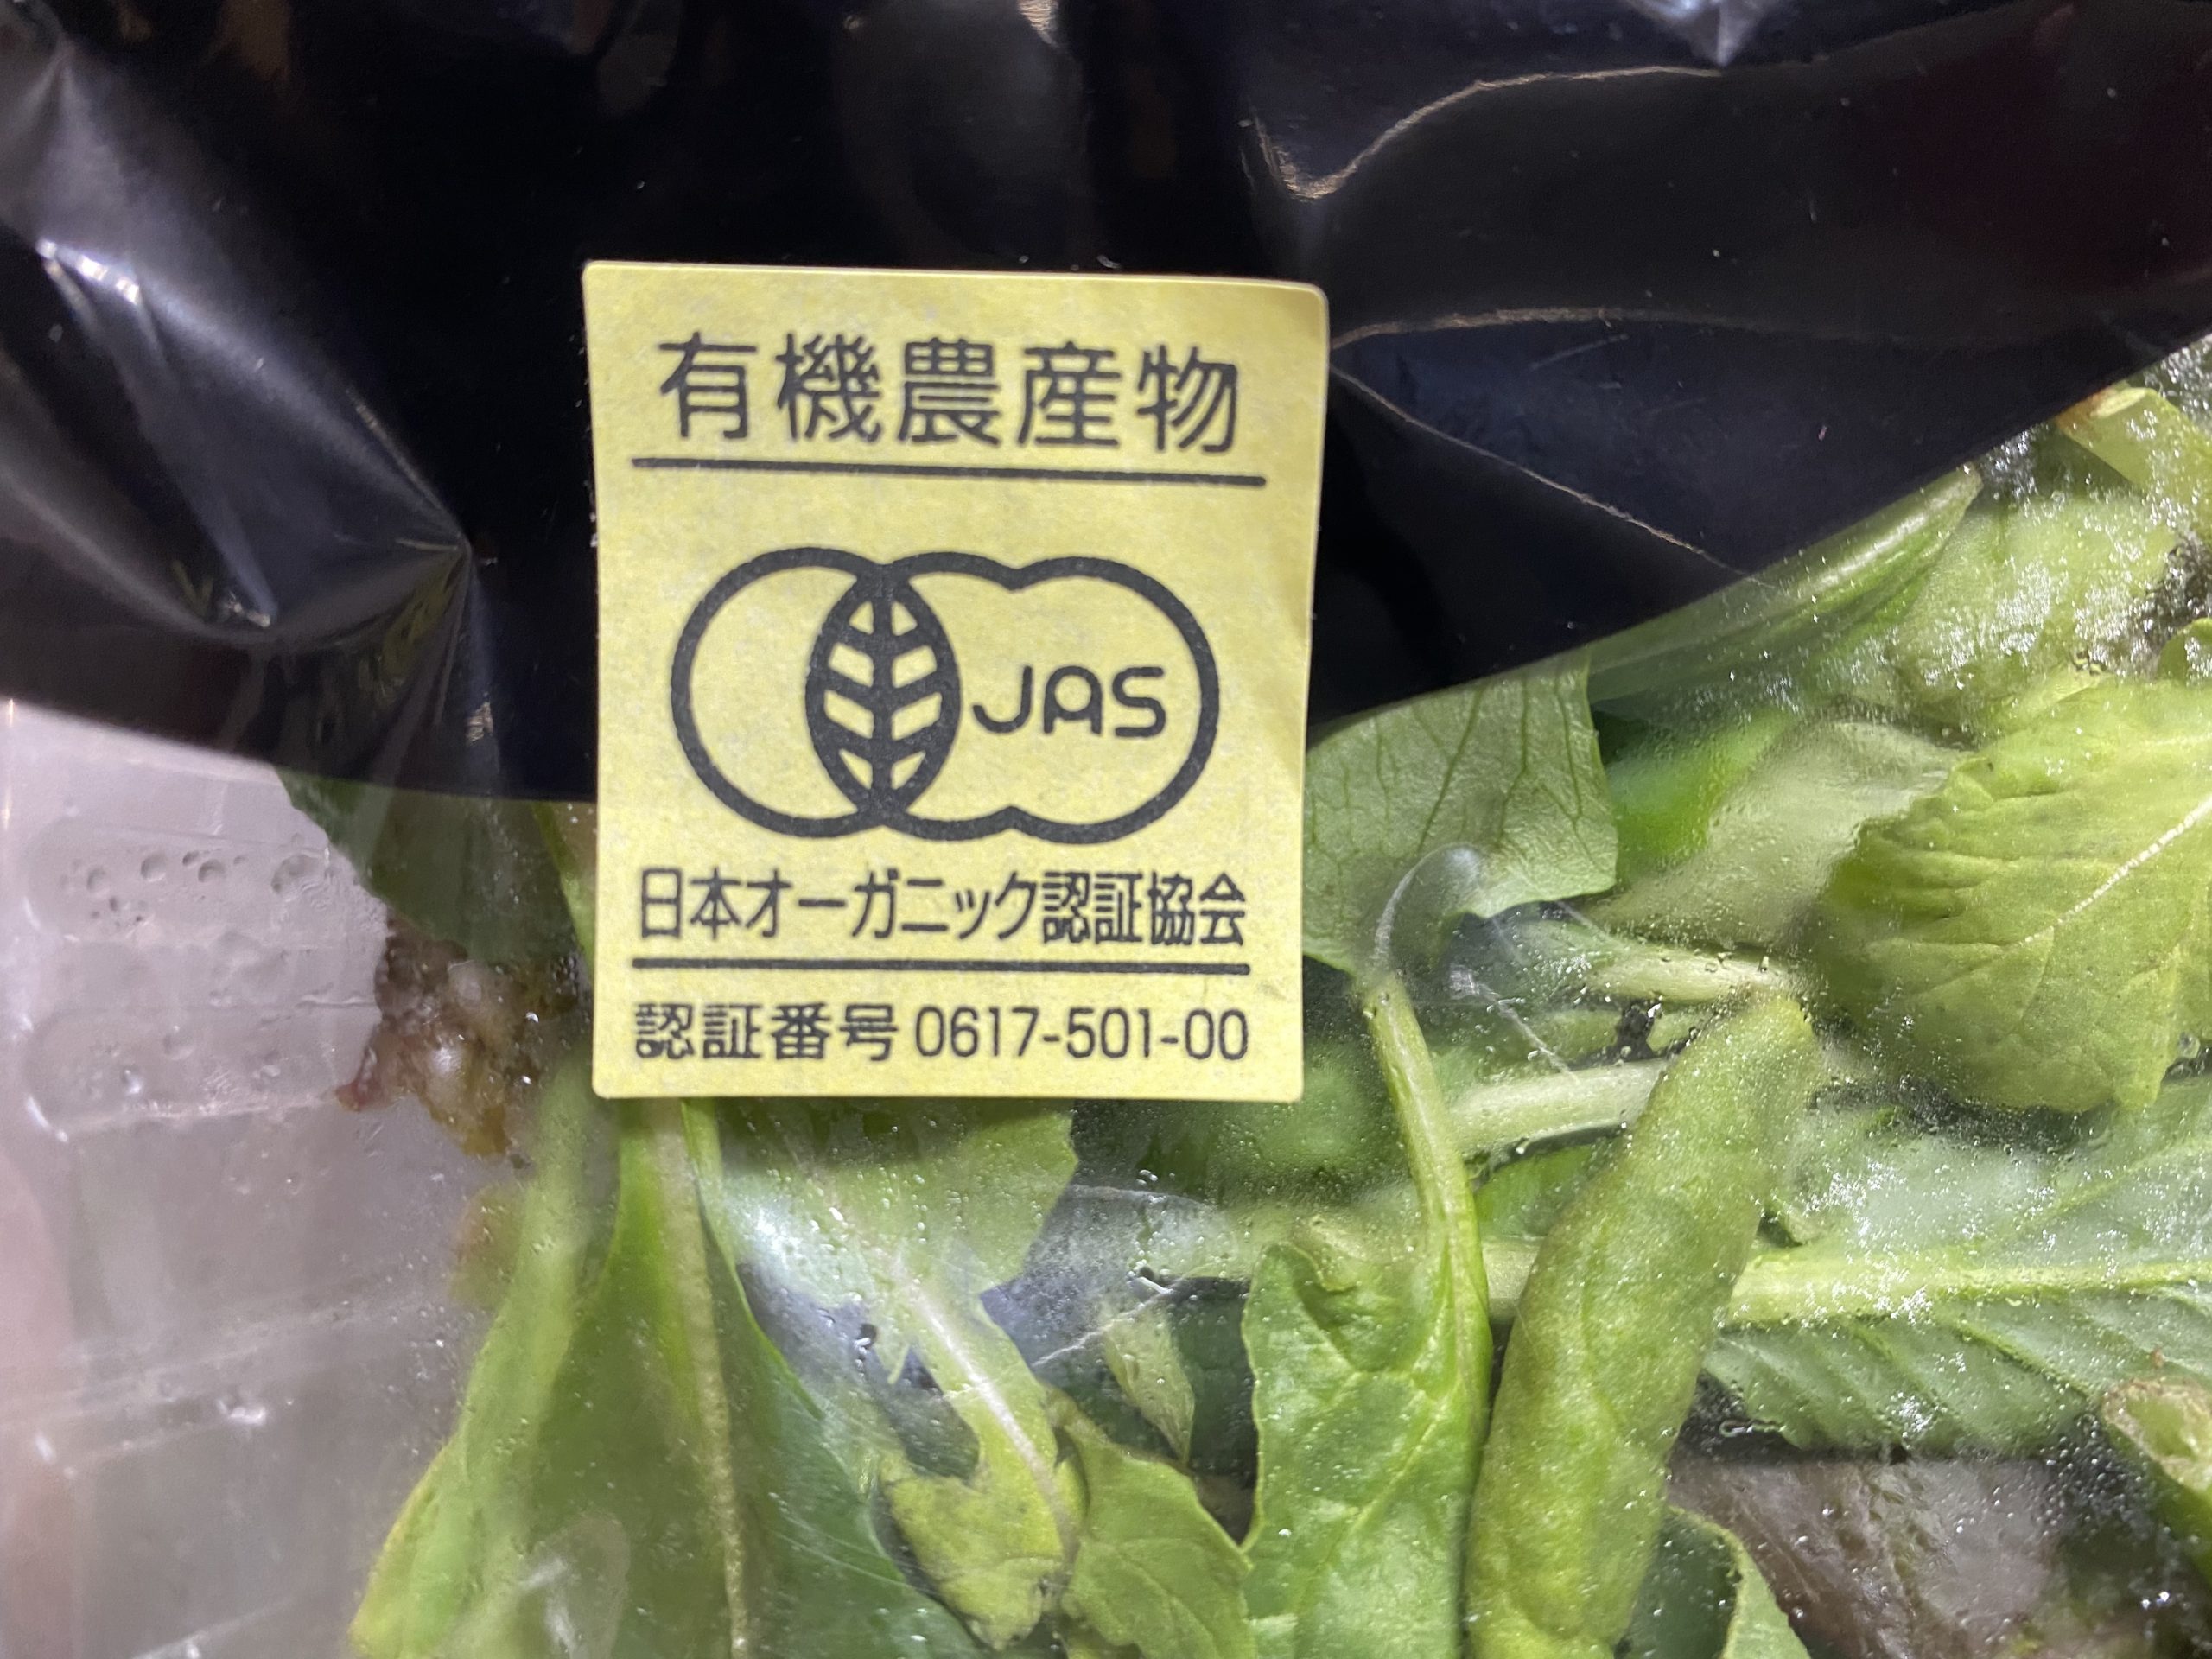 日本オーガニック認証協会の有機JAS認証マーク